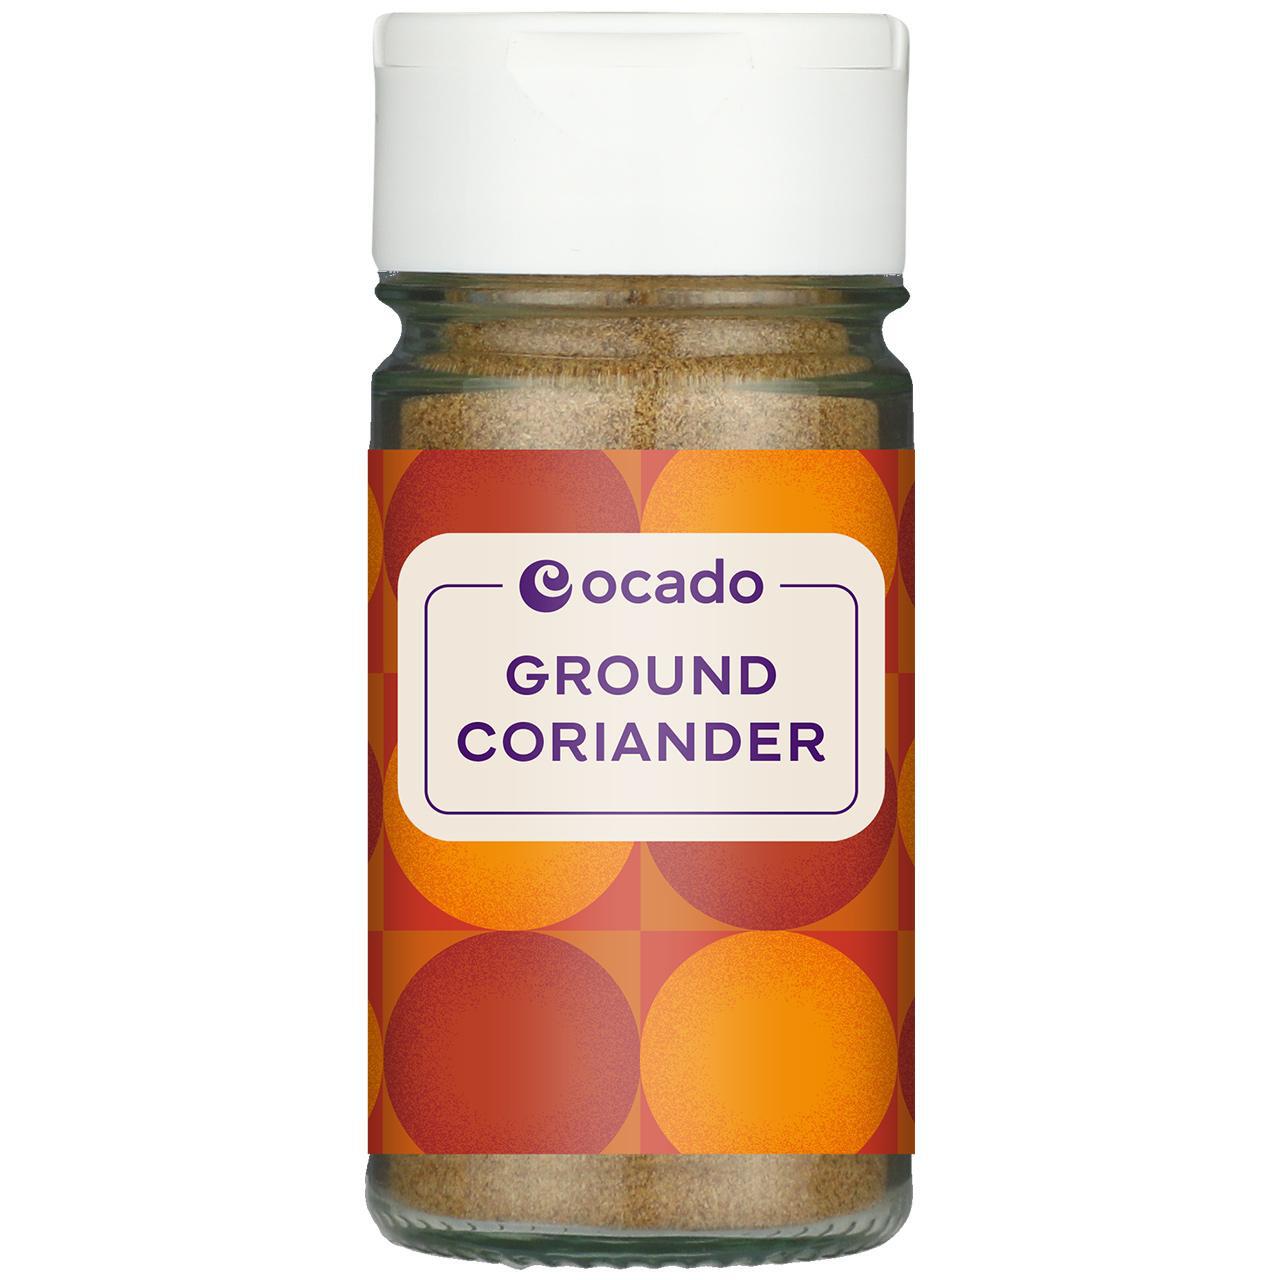 Ocado Ground Coriander 36g